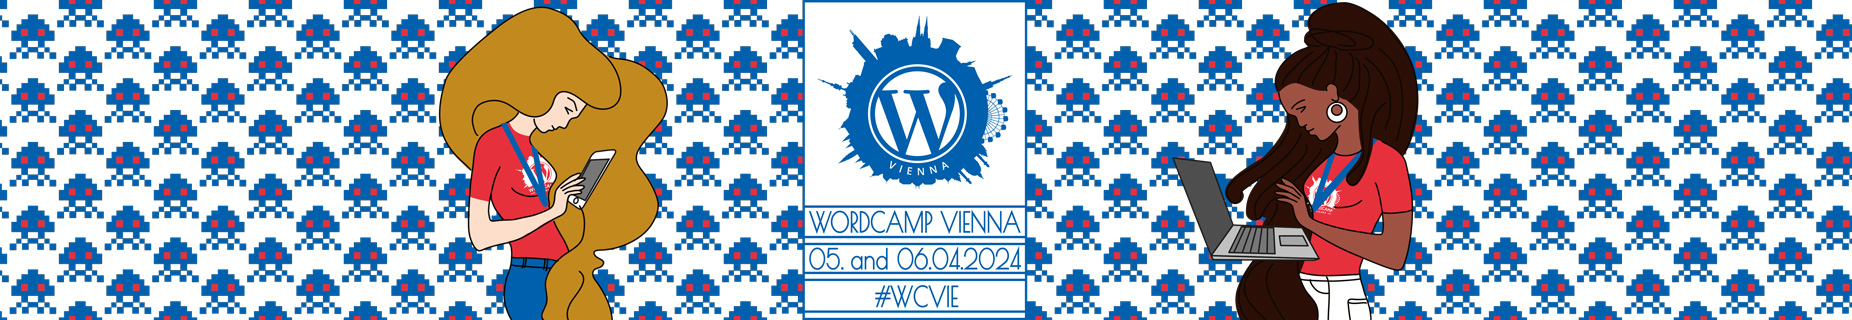 WordCamp Vienna, Austria